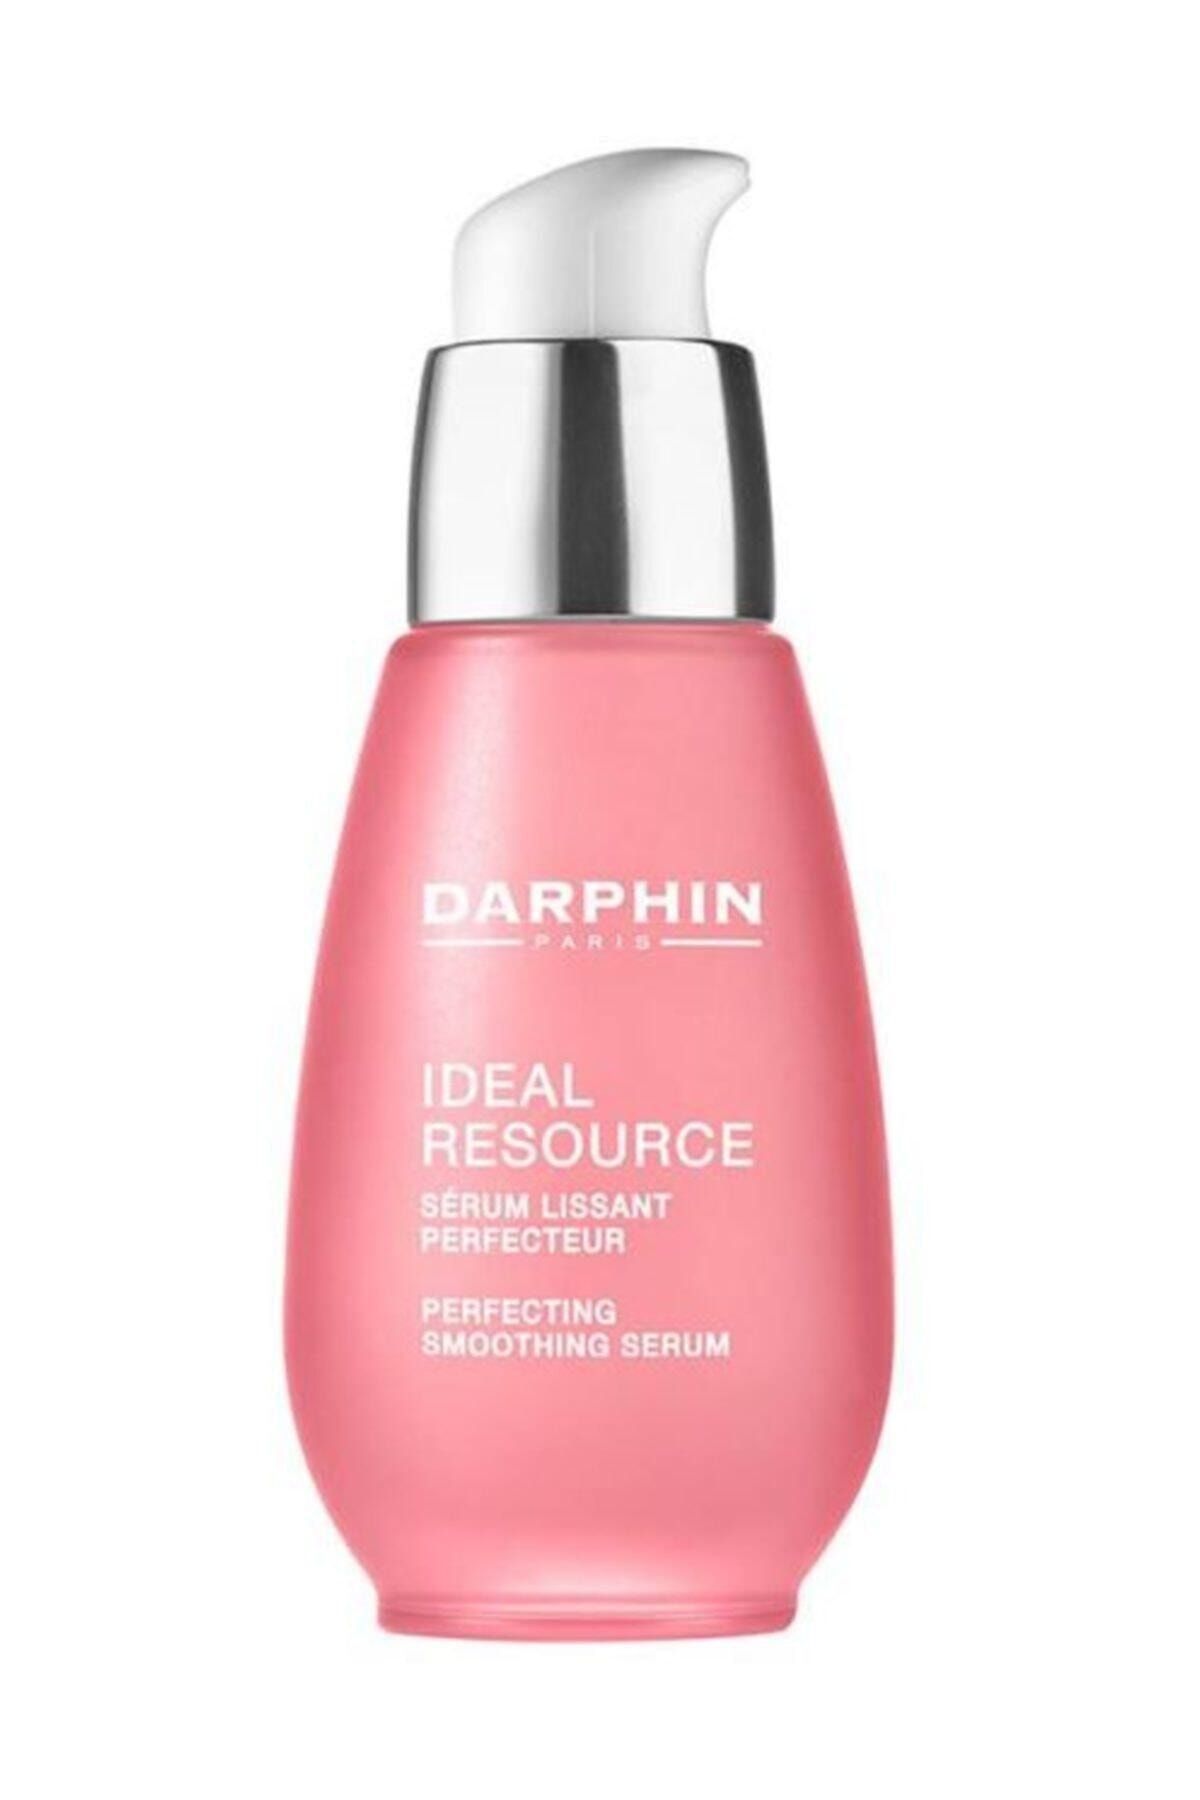 Darphin Ideal Resource Kırışık Karşıtı Serum 30 ml